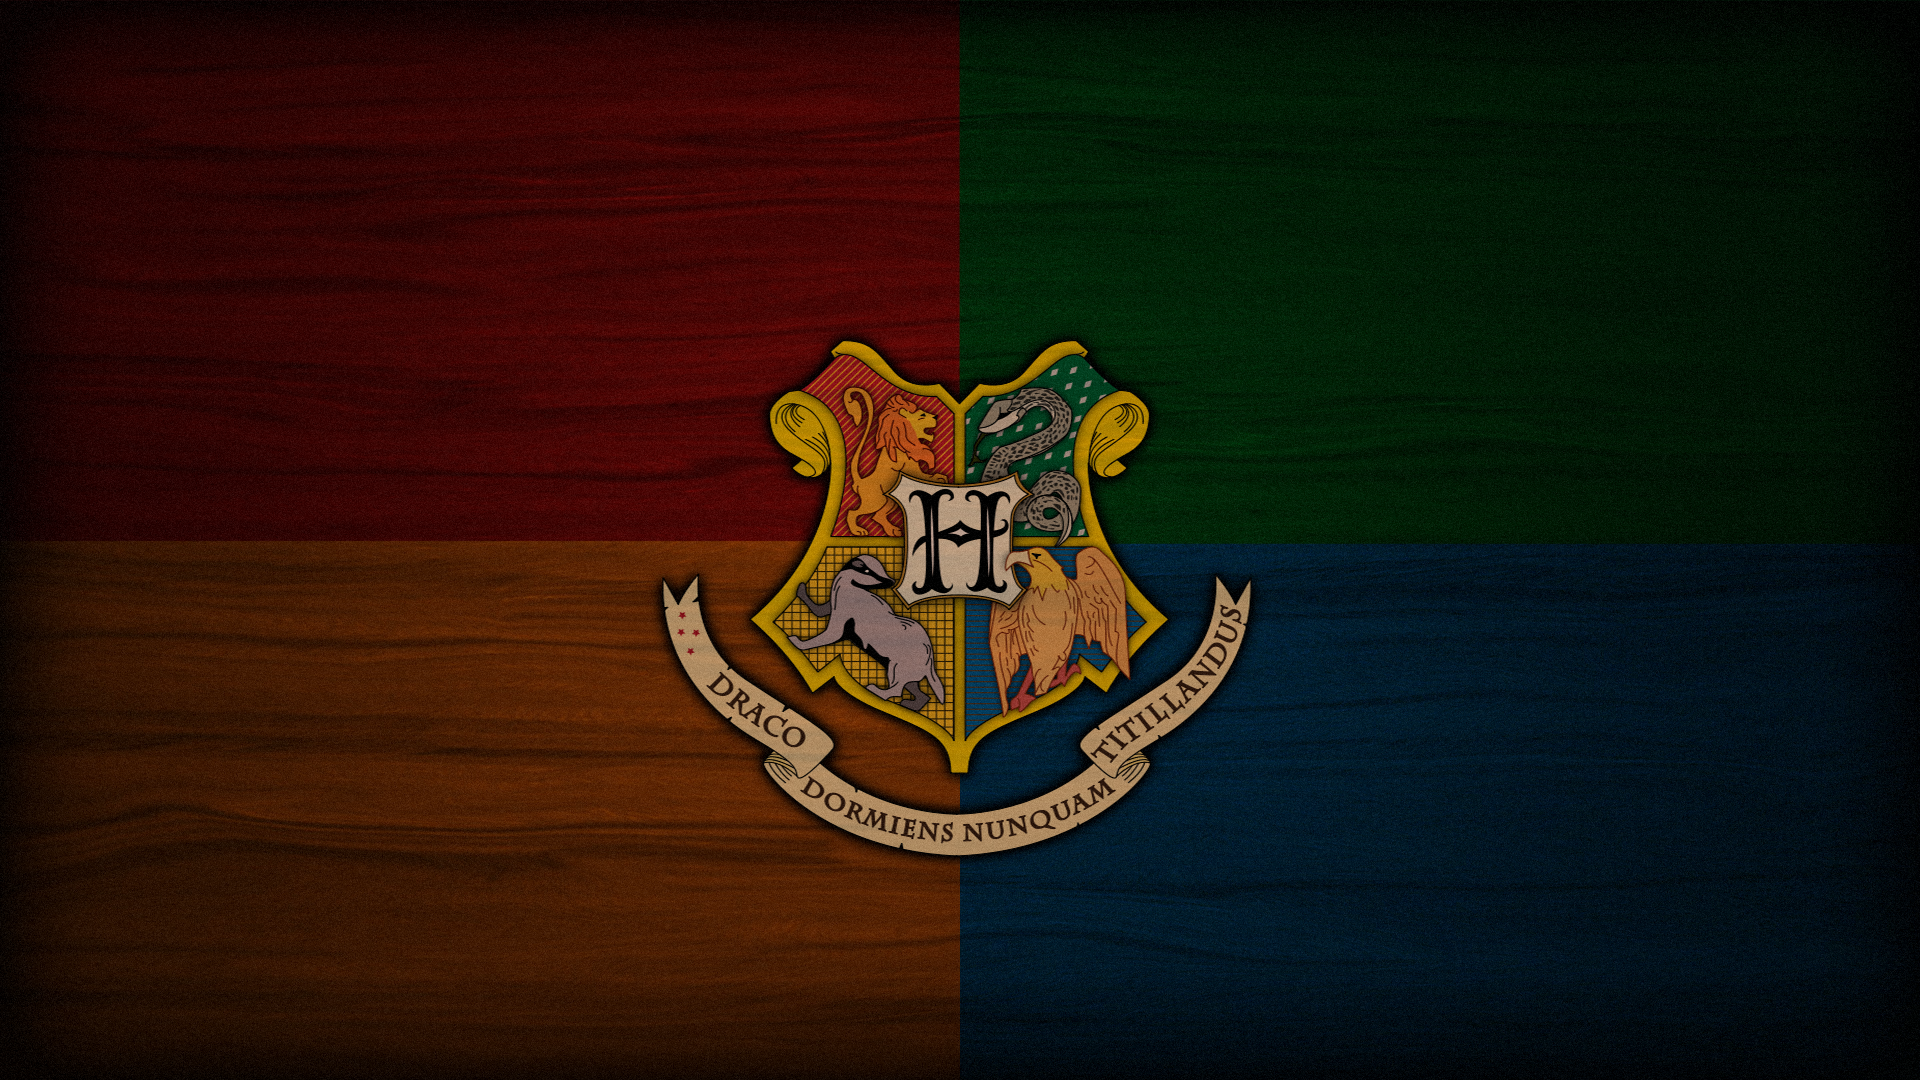 Crest Wallpaper. Uchiha Crest Wallpaper, Crest Hope Wallpaper and Hogwarts Crest Wallpaper